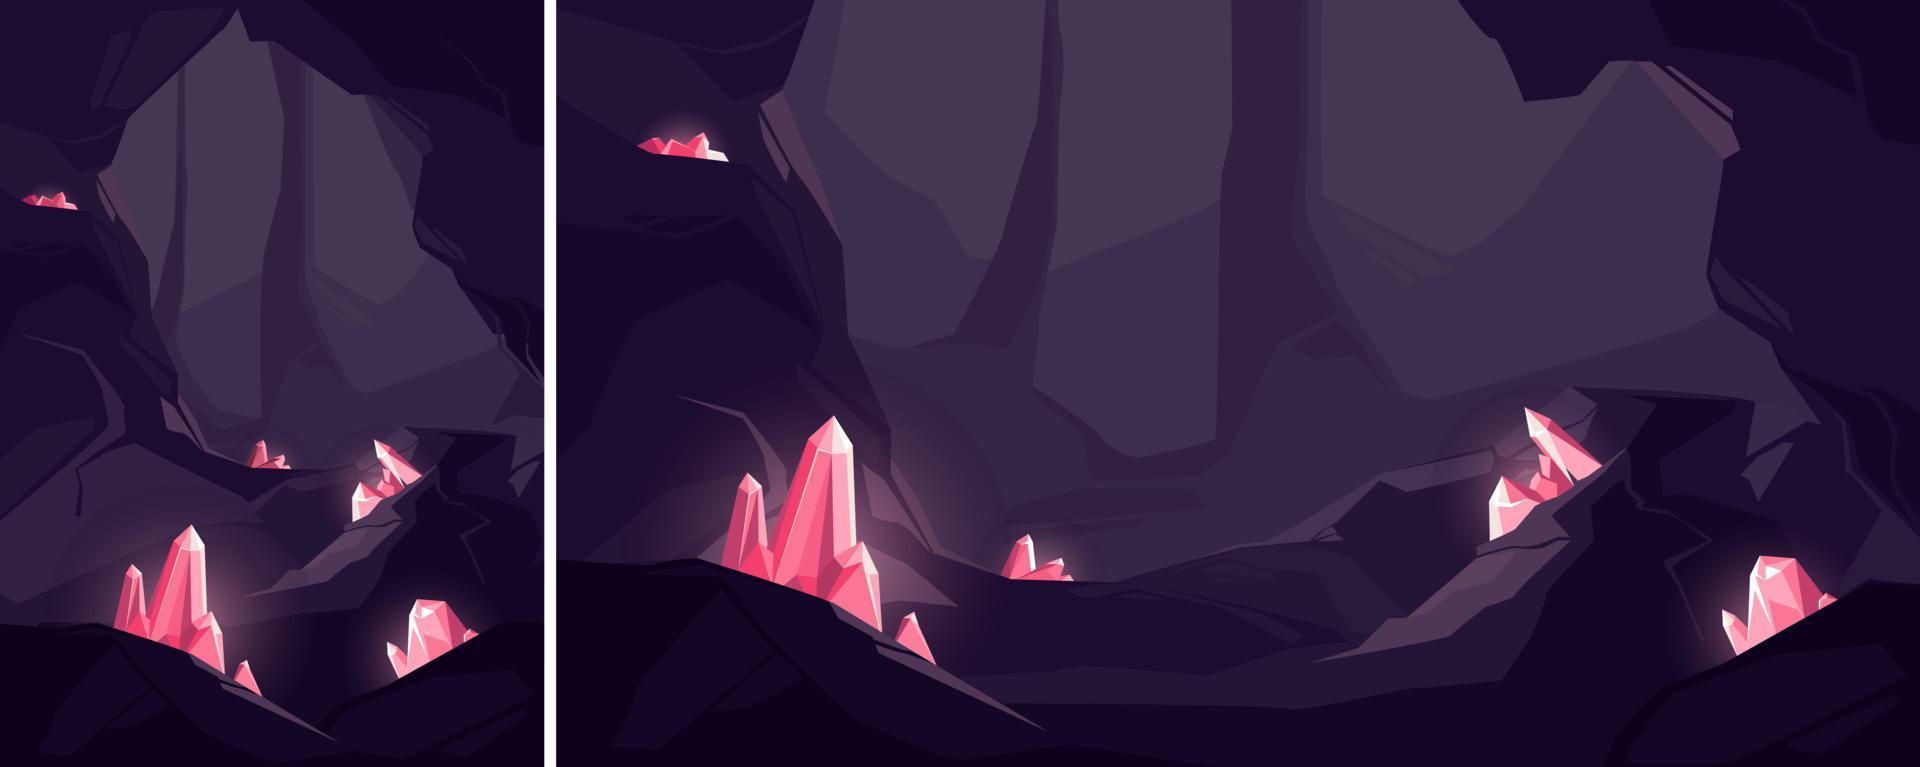 grotte aux cristaux rouges. emplacement souterrain dans différents formats. vecteur